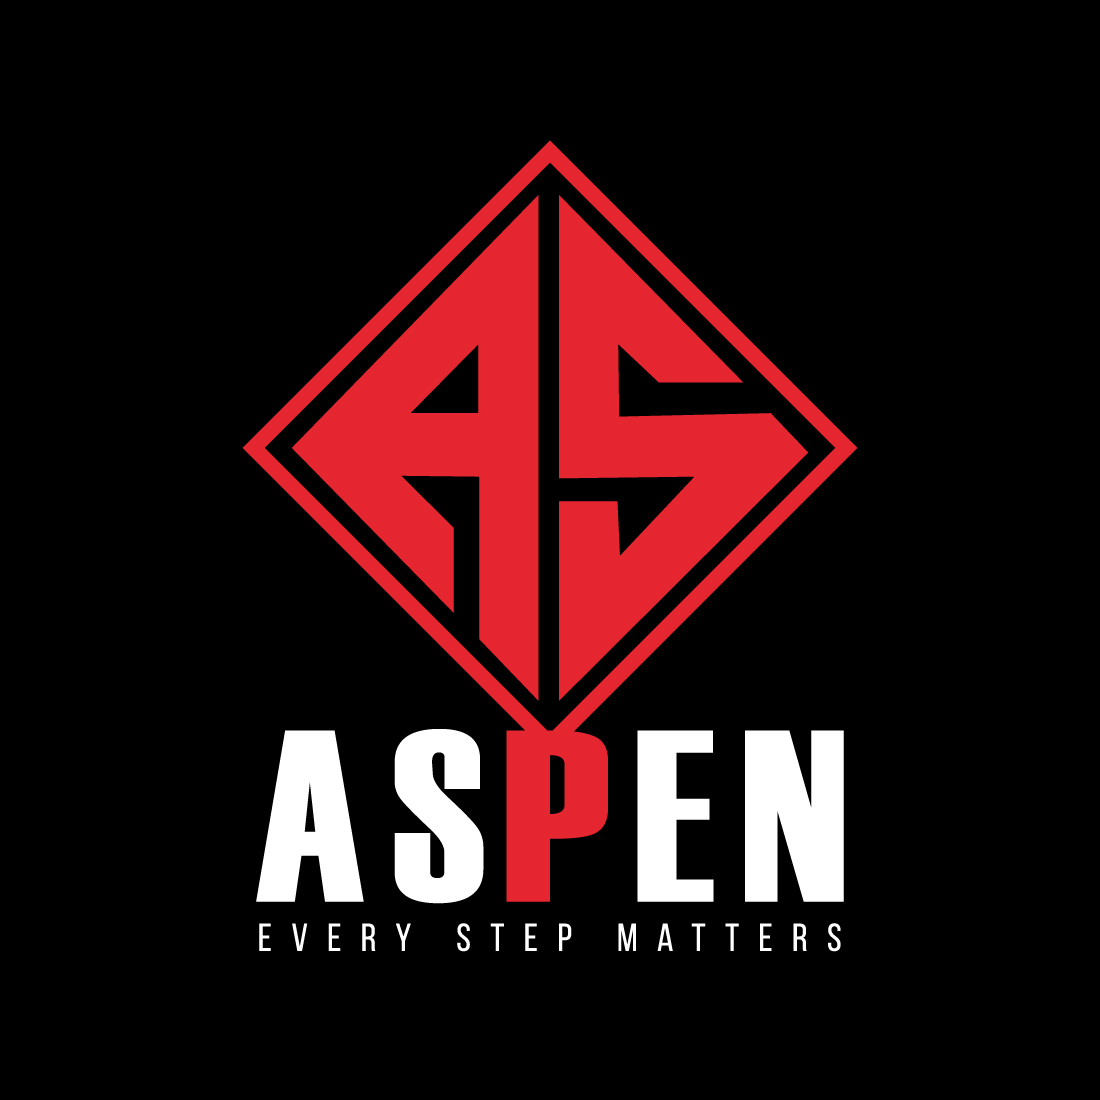 AS Letter Logo - Aspen Logo cover image.